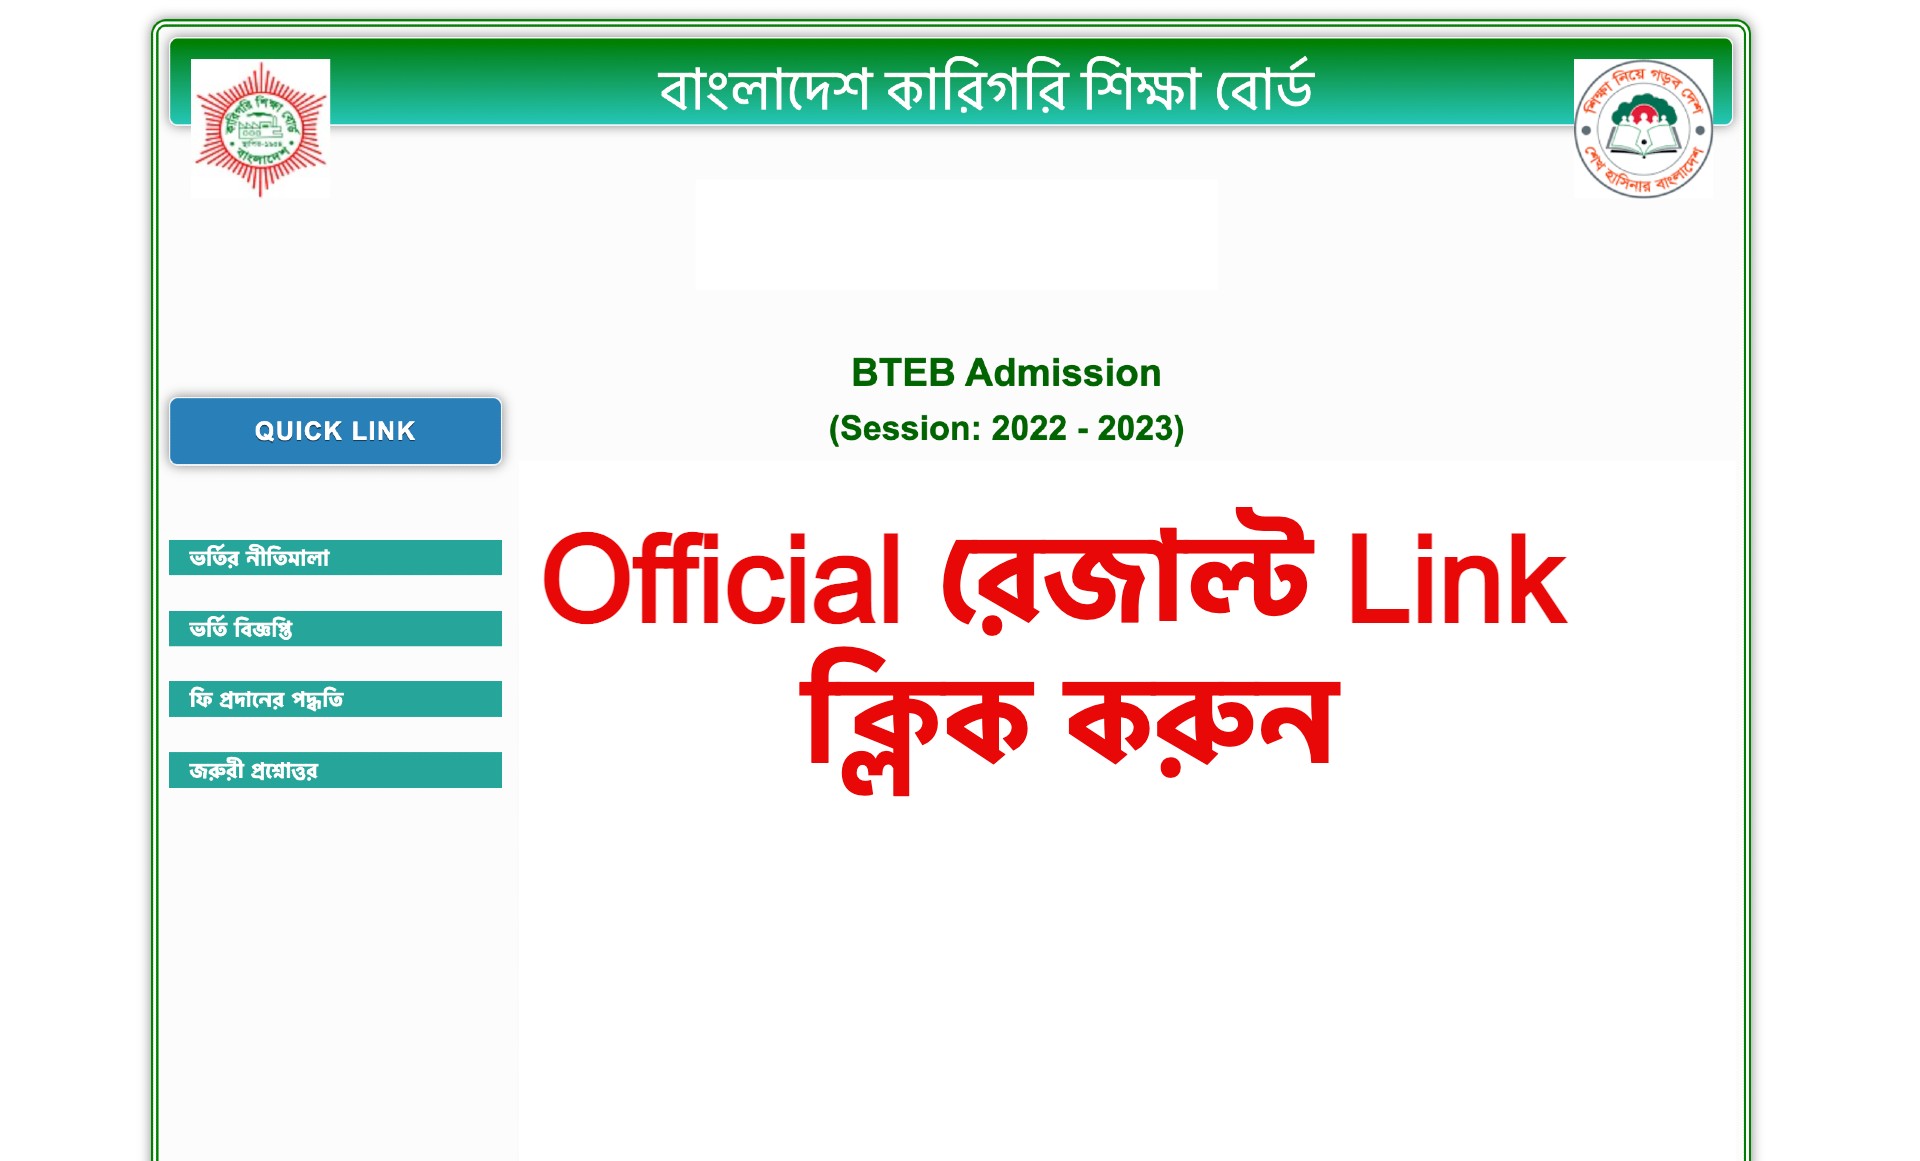 Bteb Admission Result 2022 btebadmission.gov.bd 2023 Official Link